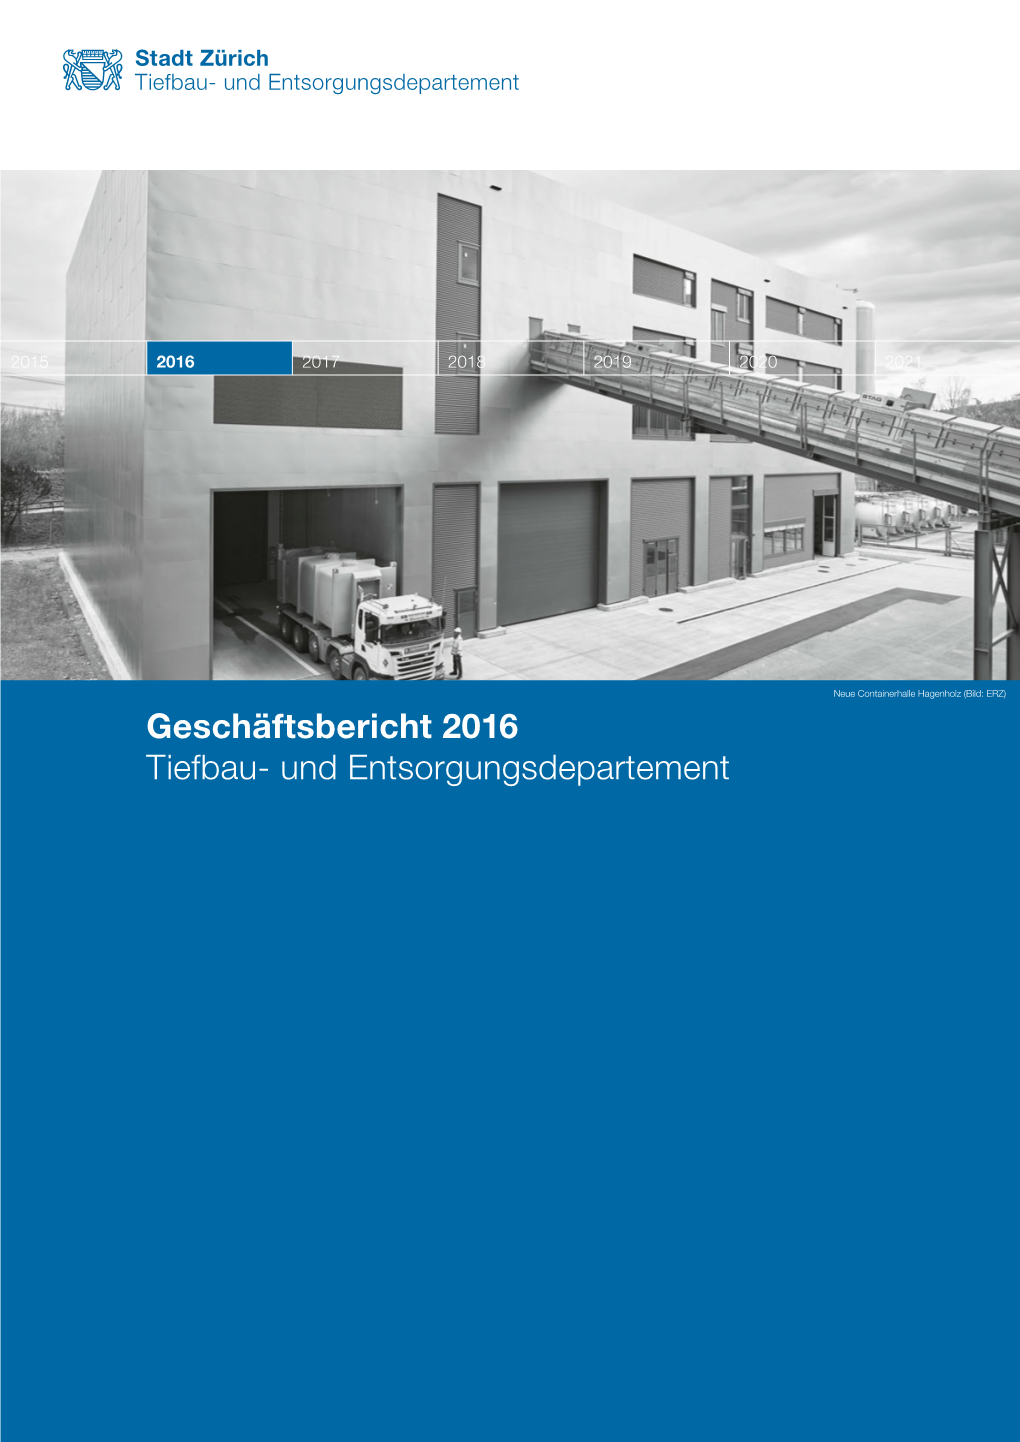 Geschäftsbericht 2016 Tiefbau- Und Entsorgungsdepartement